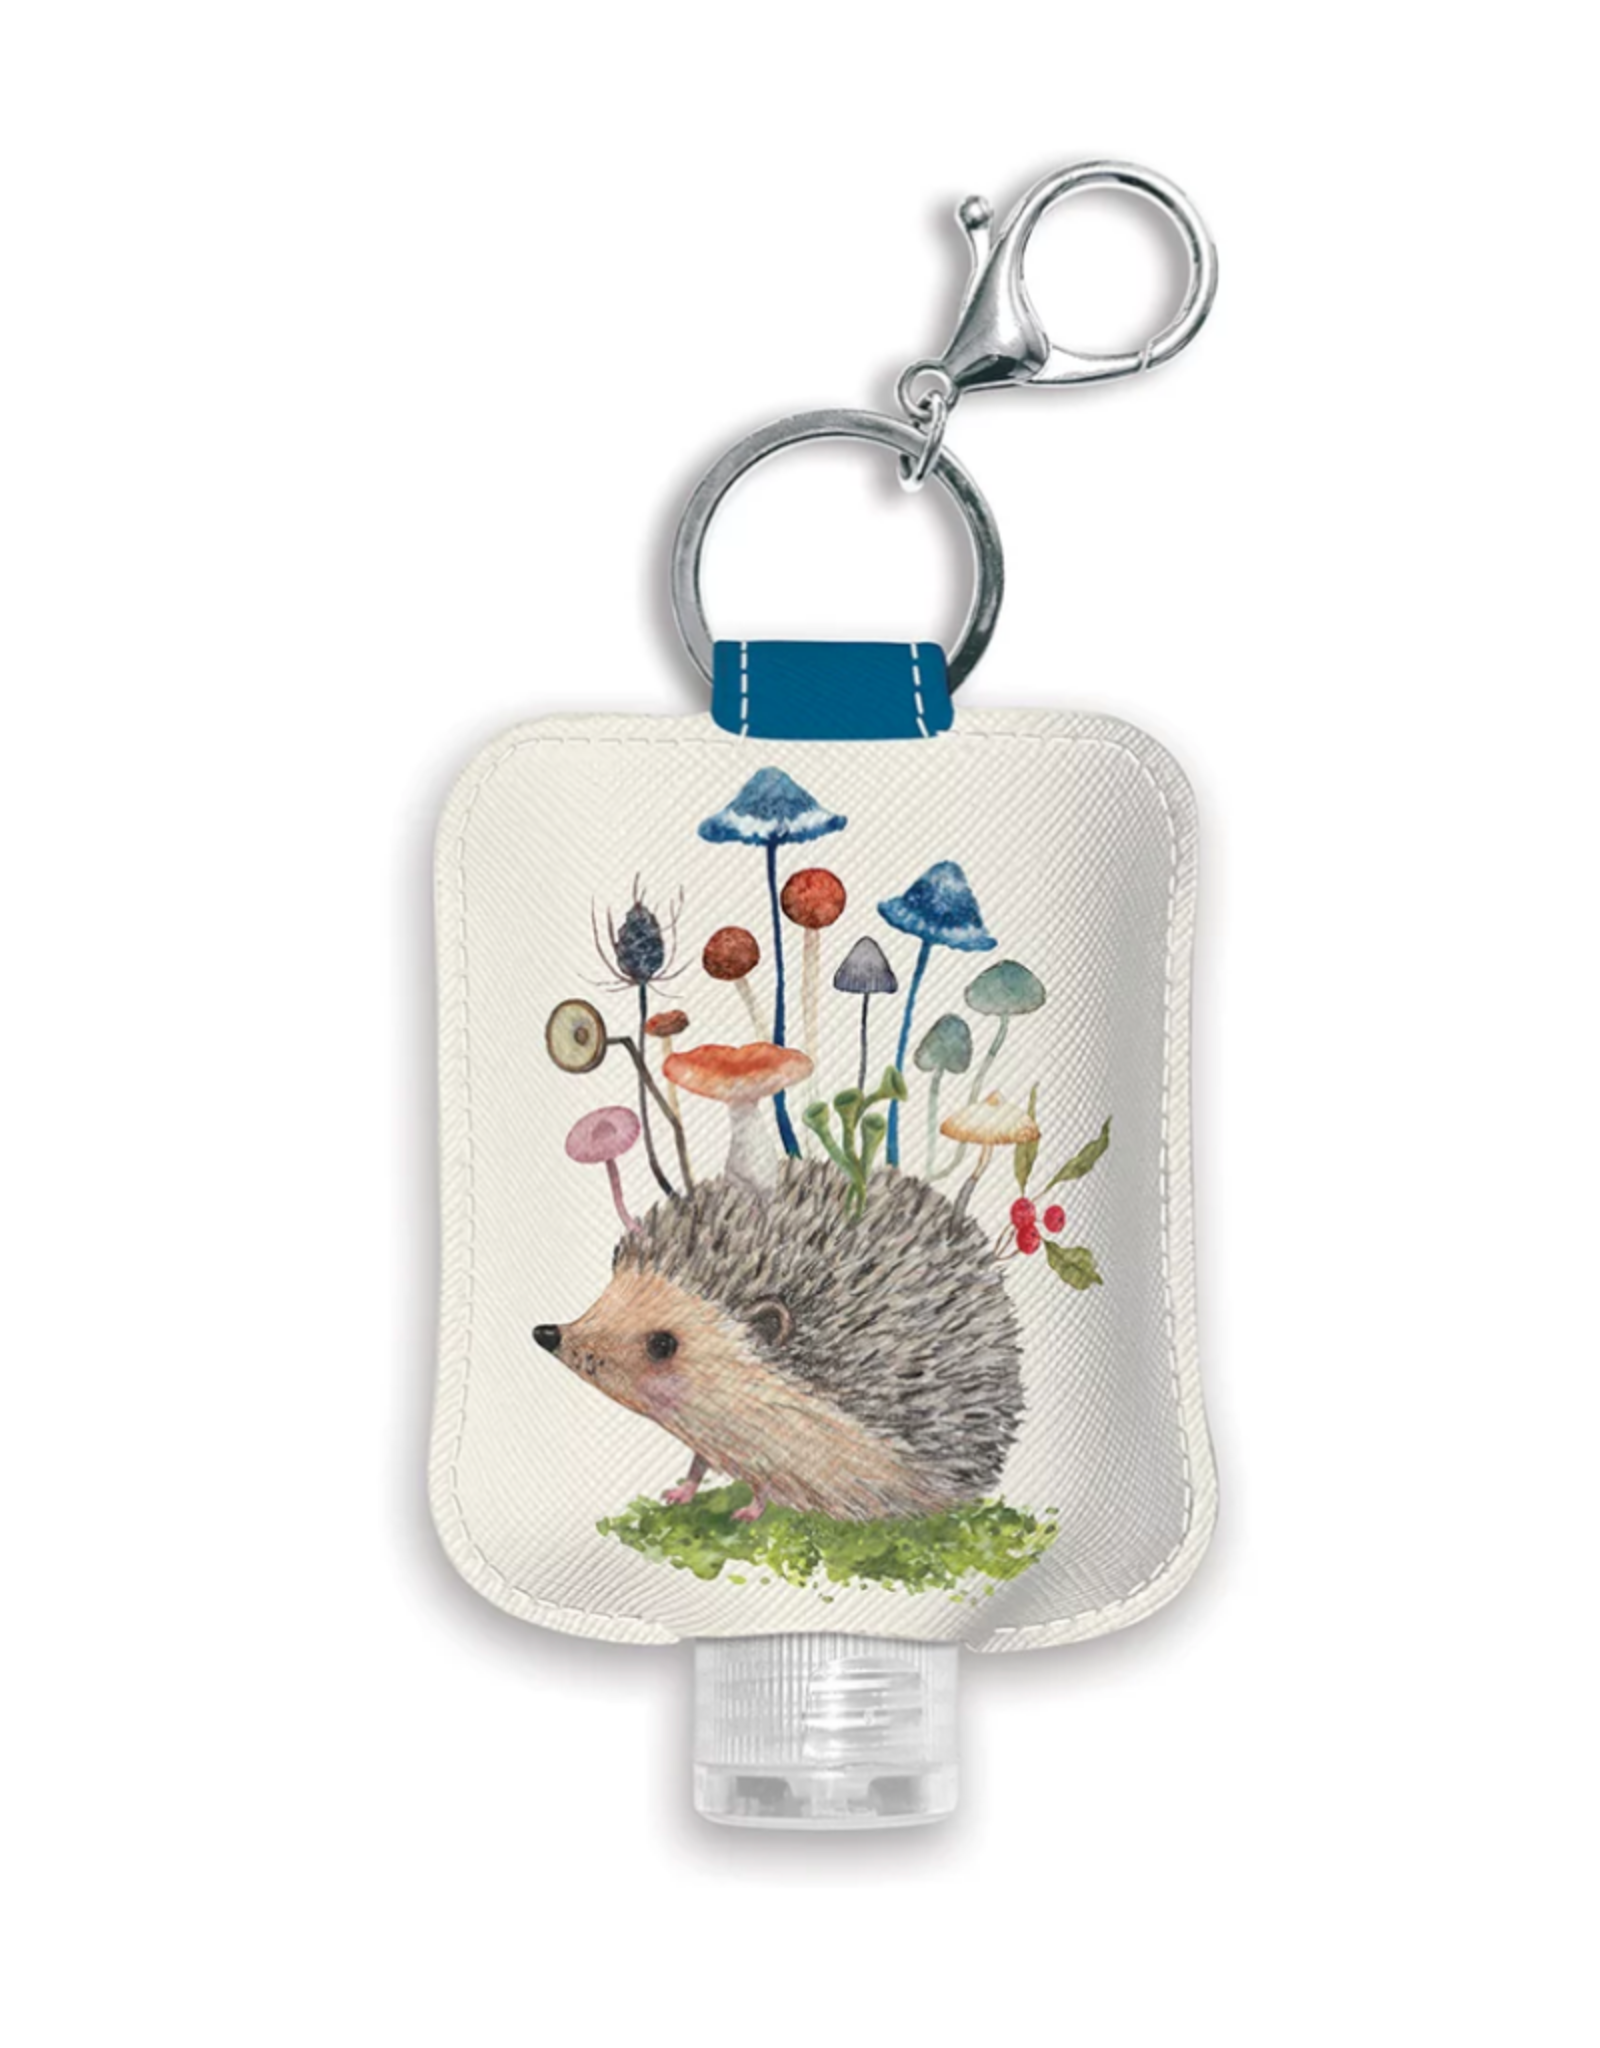 Hedgehog with Mushrooms Hand Sanitizer Holder with Bottle